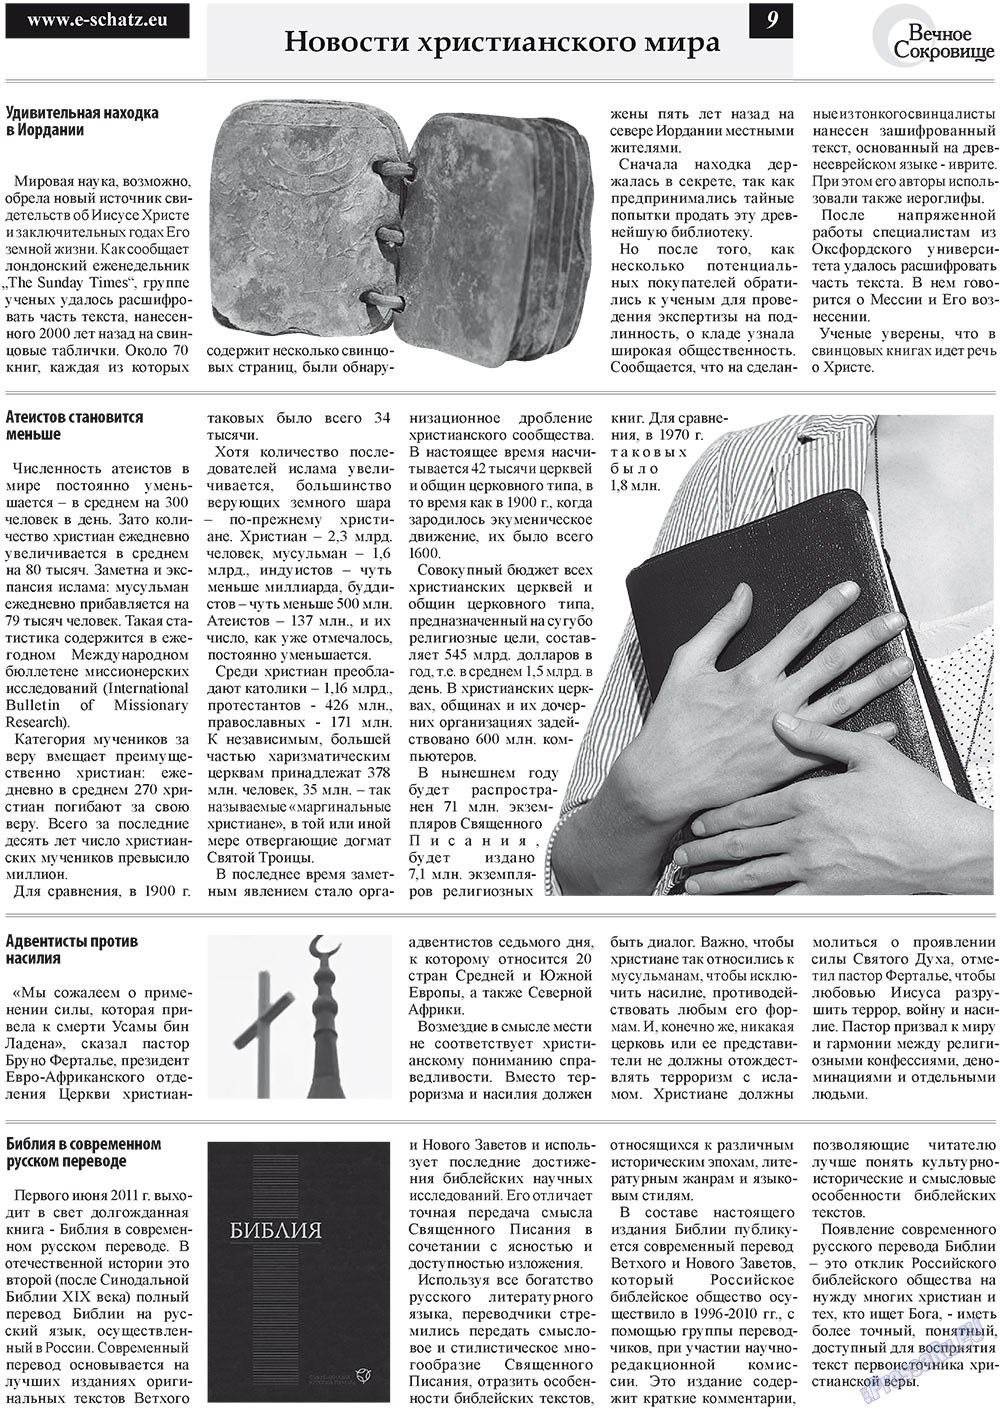 Вечное сокровище (газета). 2011 год, номер 3, стр. 9